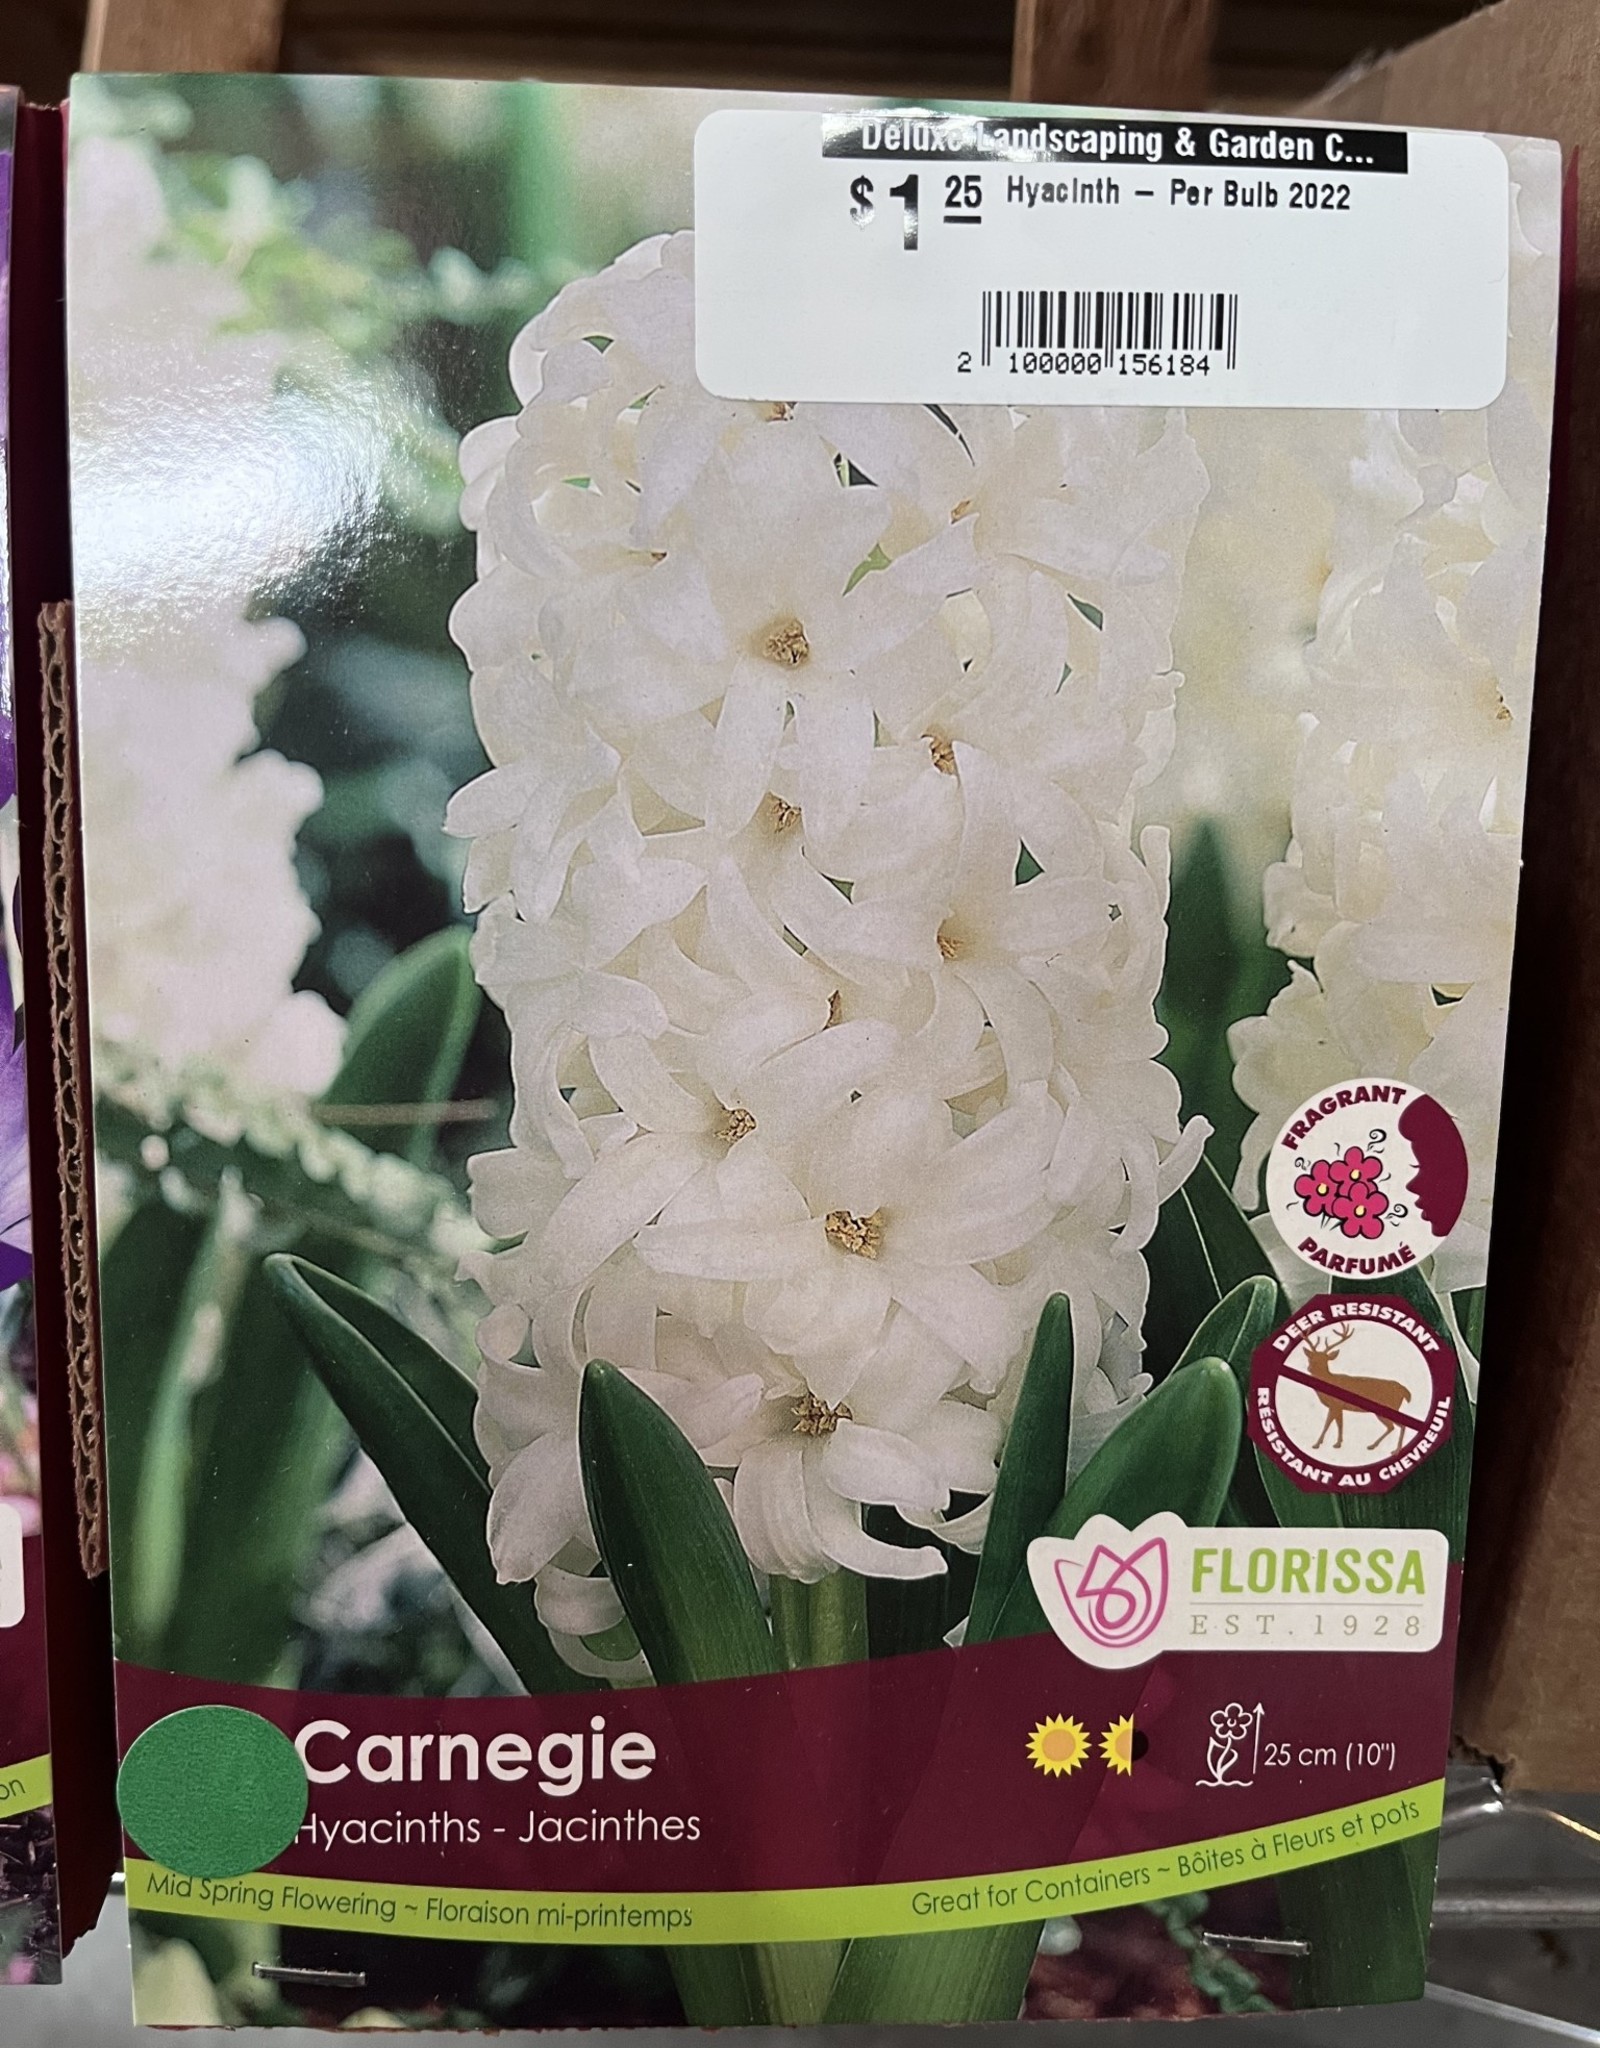 Hyacinth - Carnegie - Per Bulb